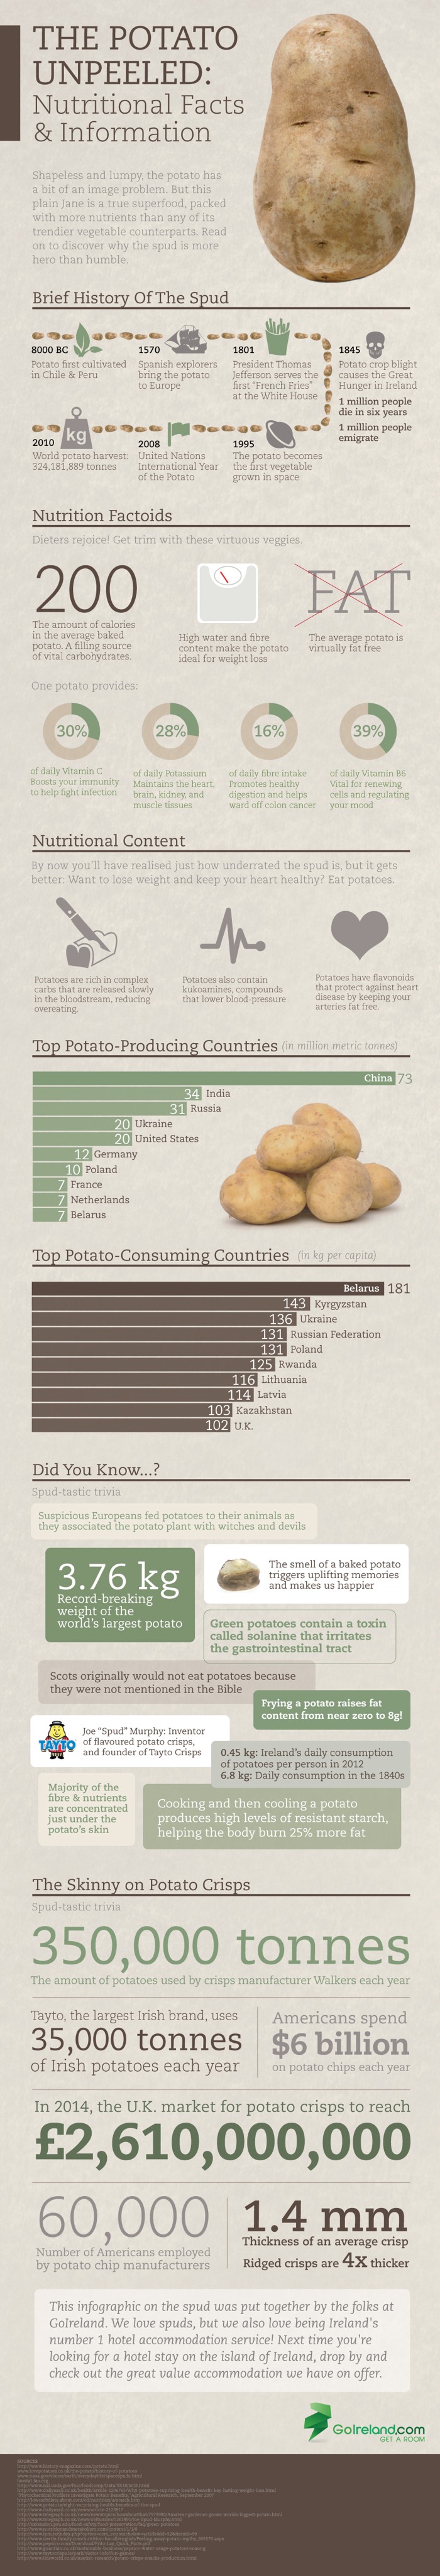 infographic-potato